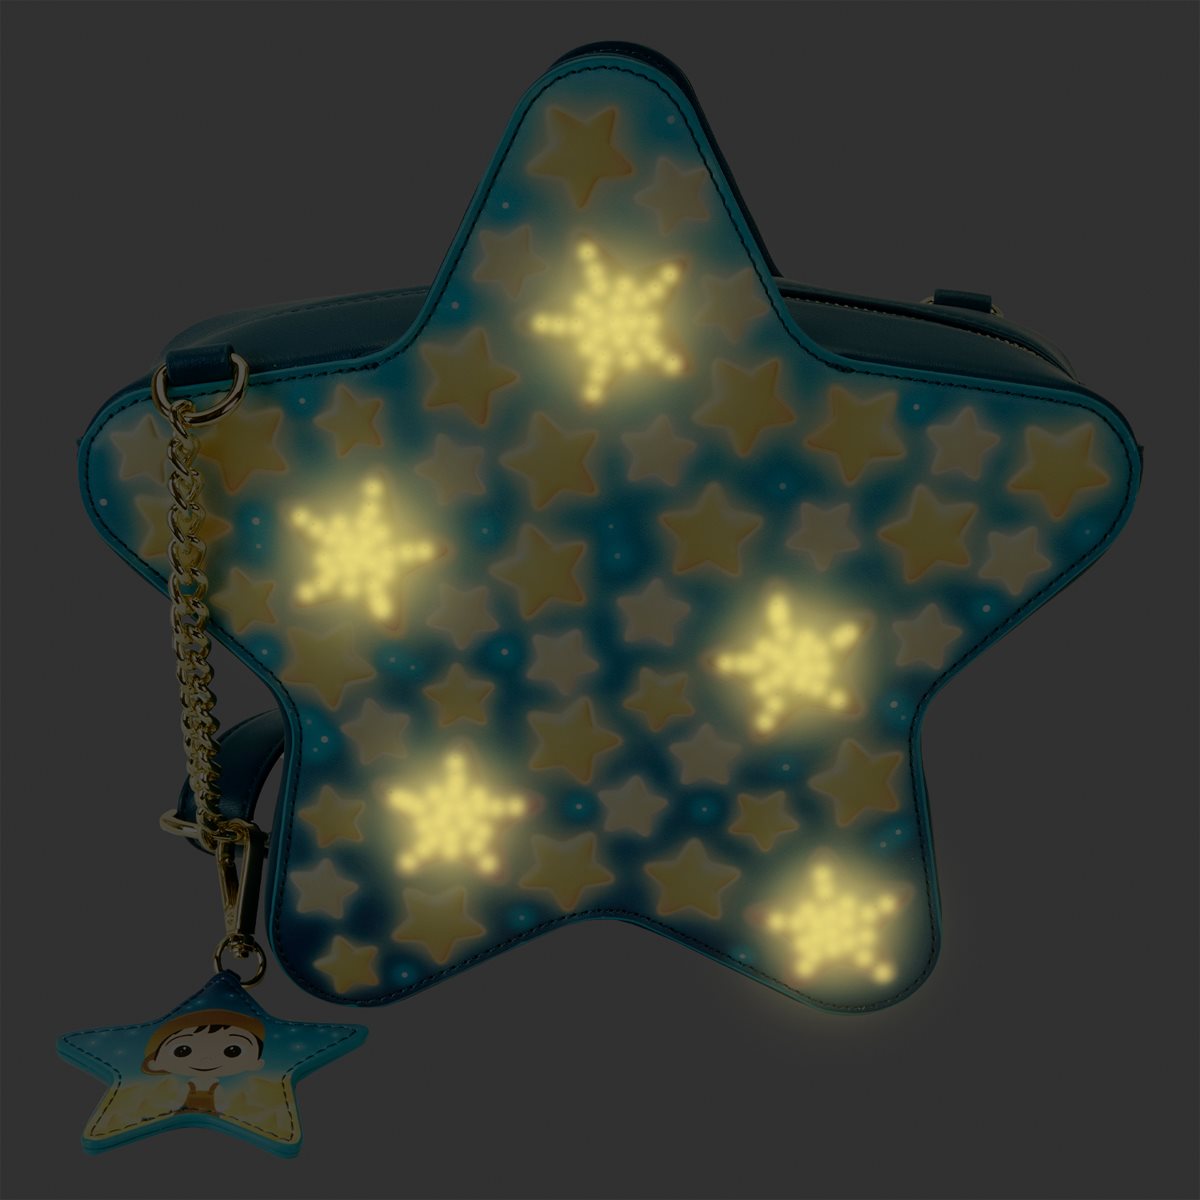 Disney-Pixar La Luna Glow-in-the-Dark Star Crossbody Bag with Charm Loungefly